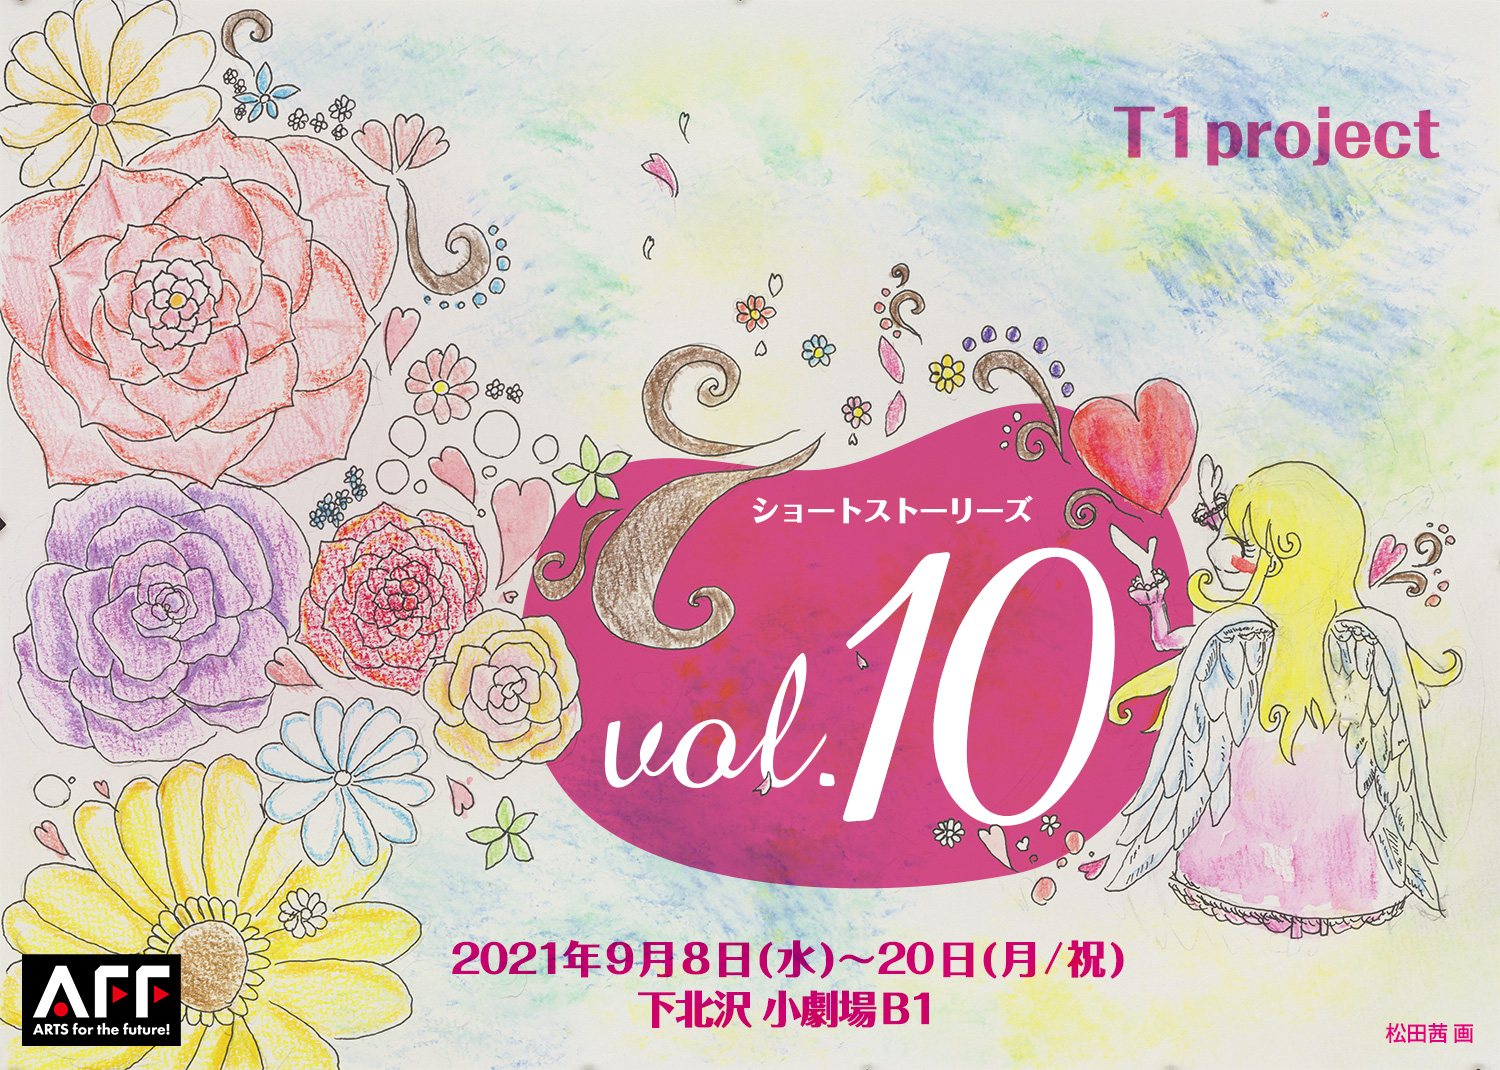 T1project ショートストーリーズ vol.10 2021年9月8日(水)～20日(月/祝)下北沢 小劇場B1